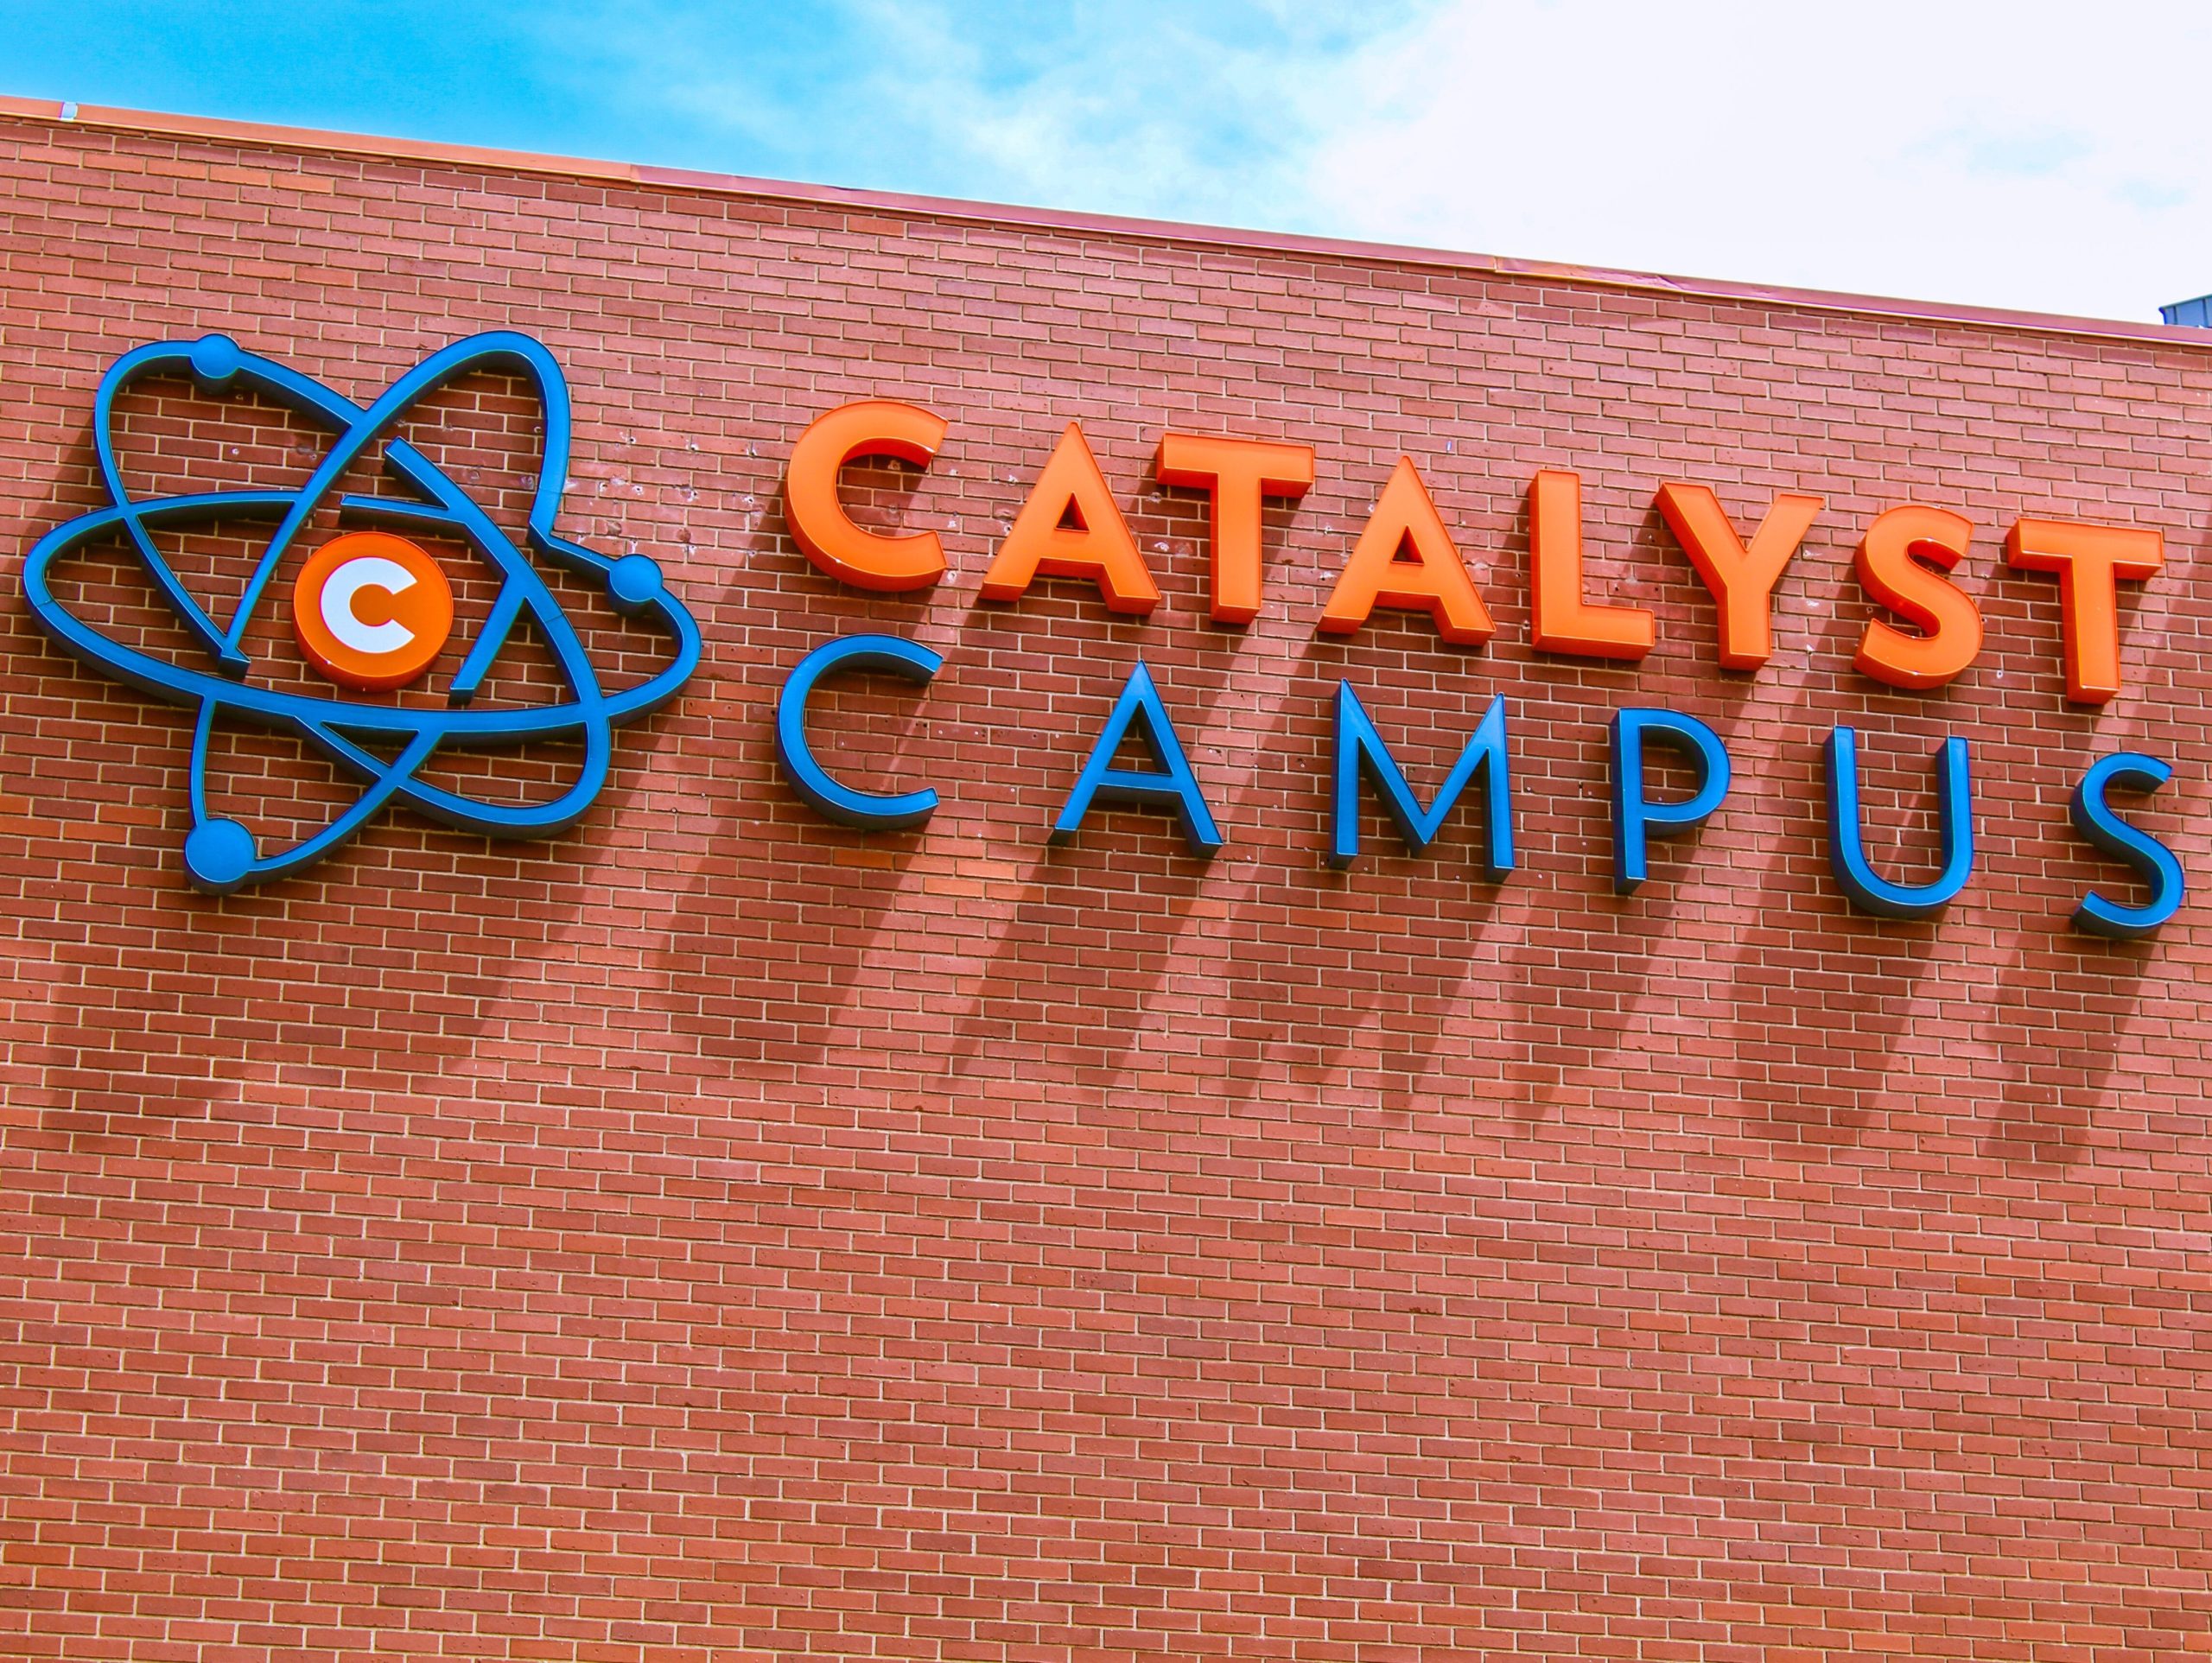 catalyst campus grows aerospace and defense startups in colorado springs